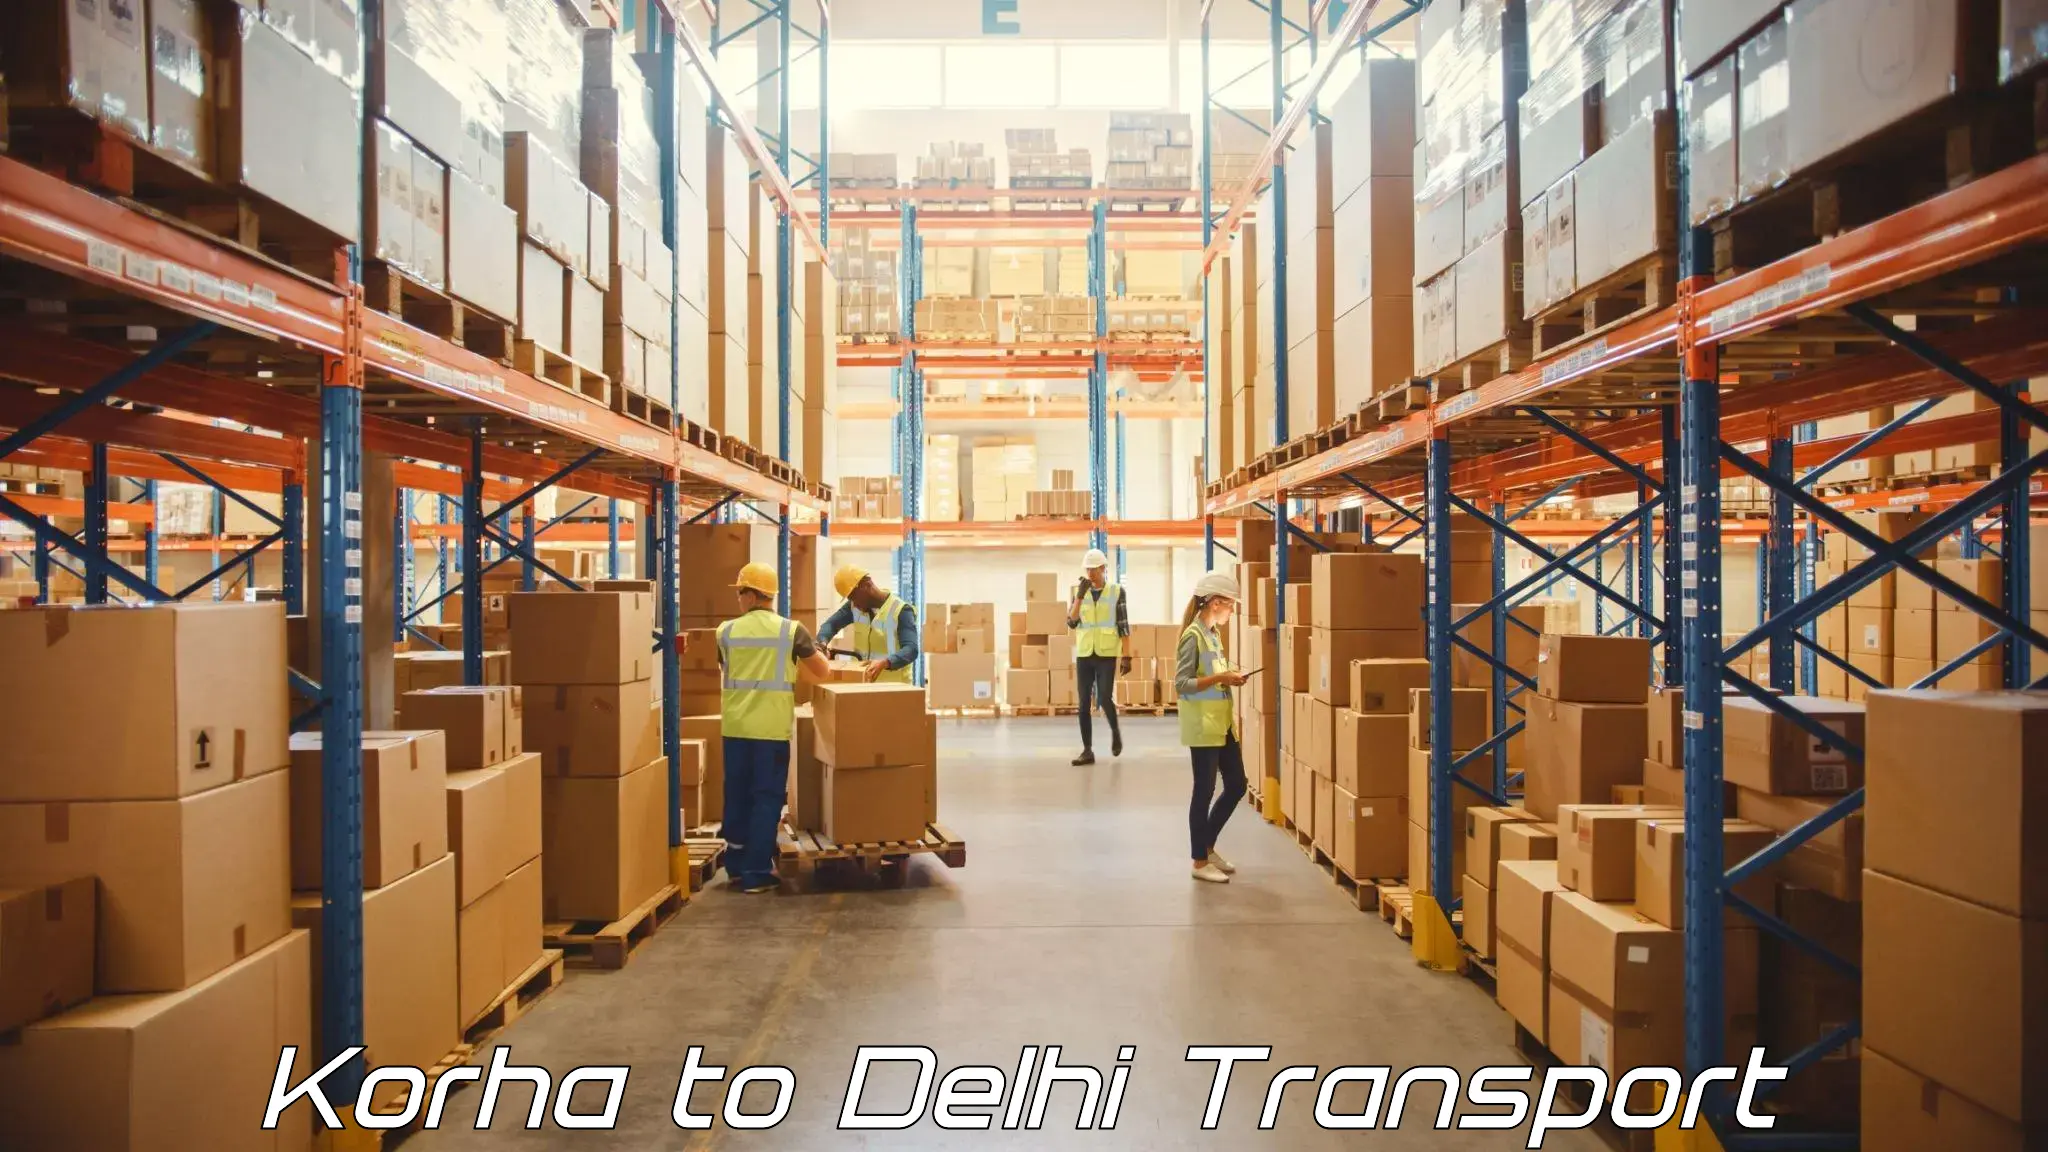 Commercial transport service Korha to IIT Delhi